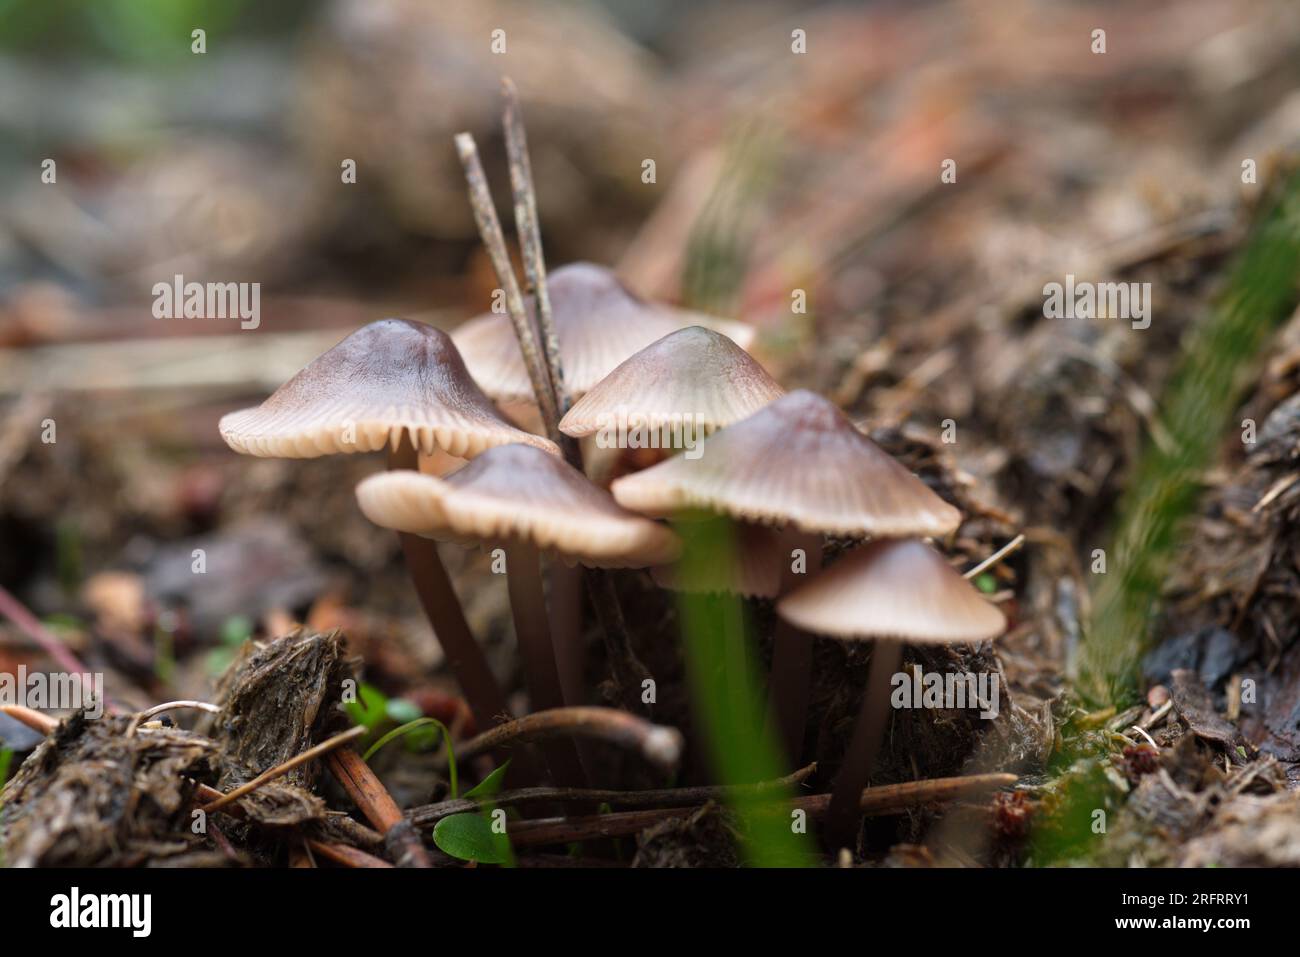 Mycena sp mushroom in the forest. Setas de Mycena sp en el bosque Stock Photo